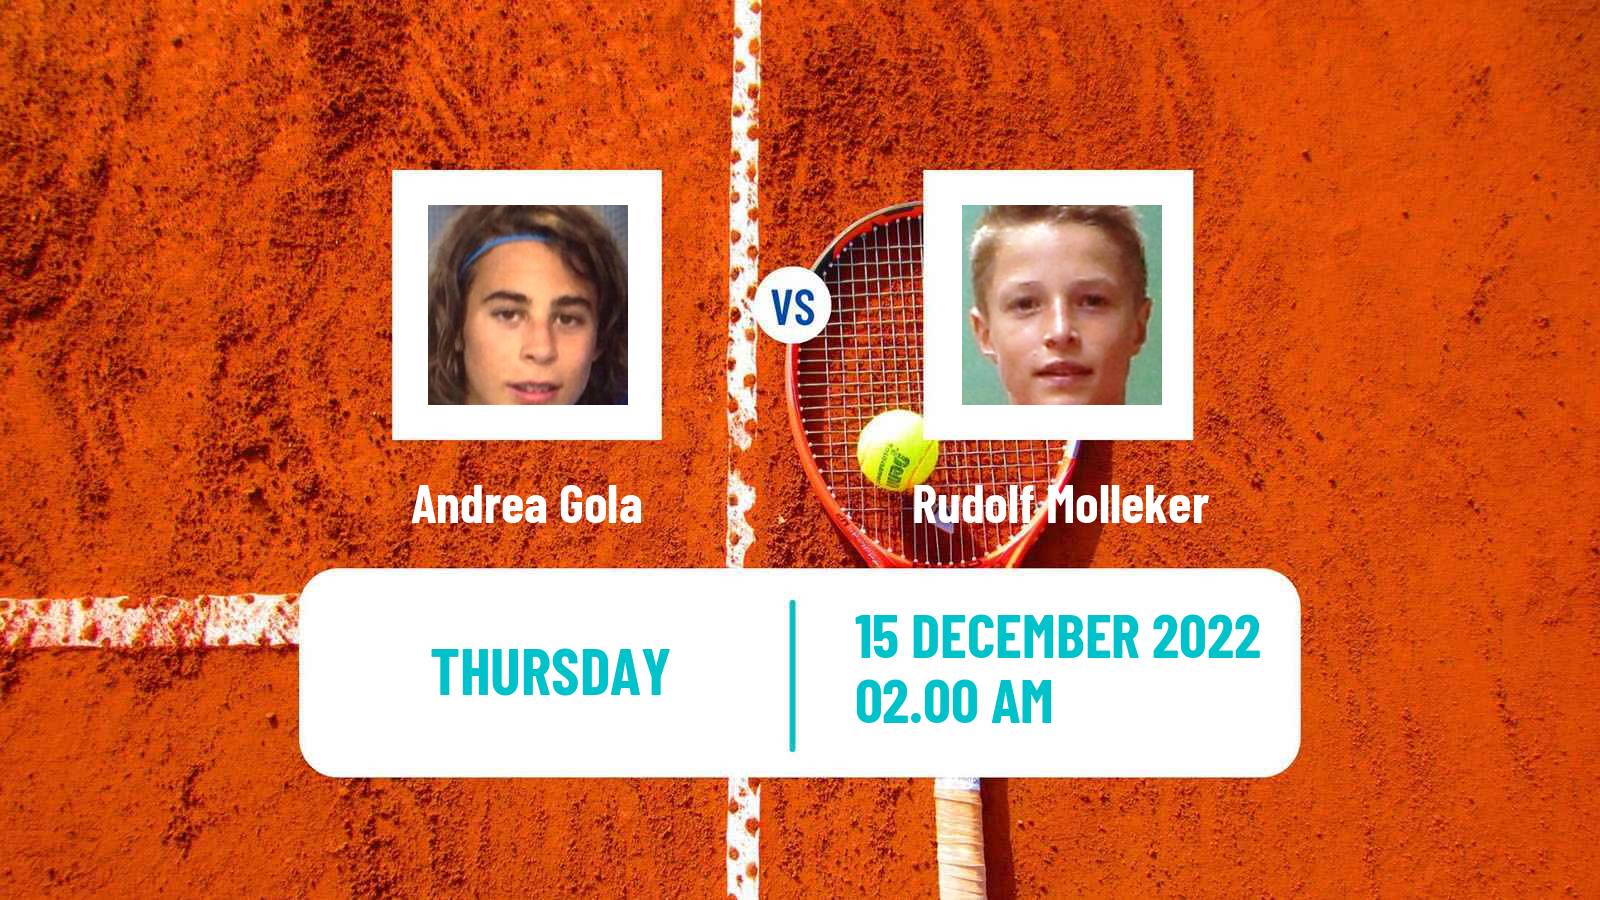 Tennis ITF Tournaments Andrea Gola - Rudolf Molleker